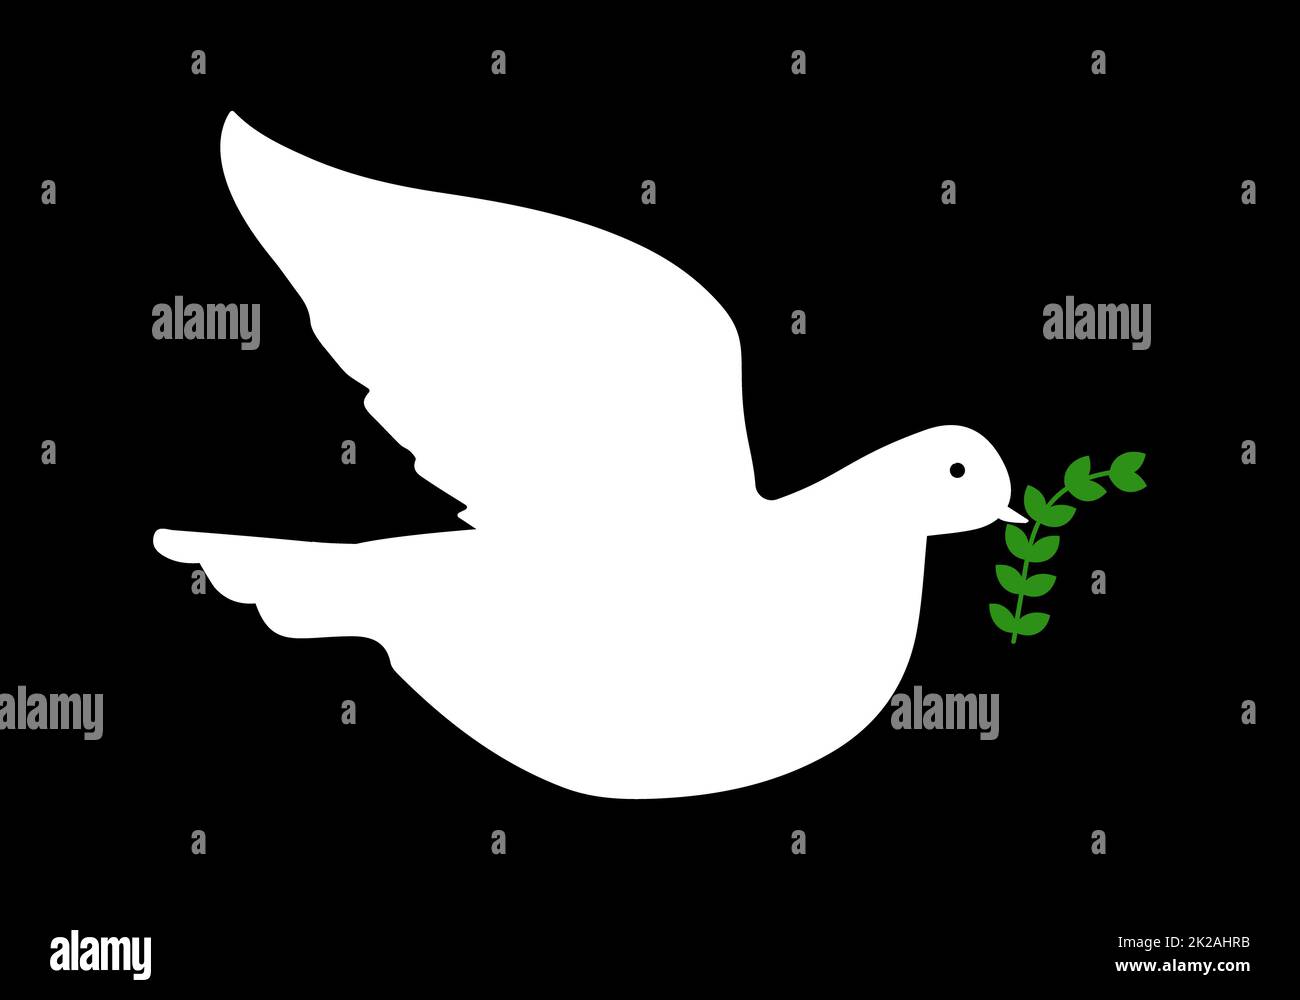 Colomba di pace icona. Uccello bianco volante con ramo verde di oliva. Concetto Pace del mondo e nessuna guerra e aggressione. Illustrazione vettoriale. Foto Stock